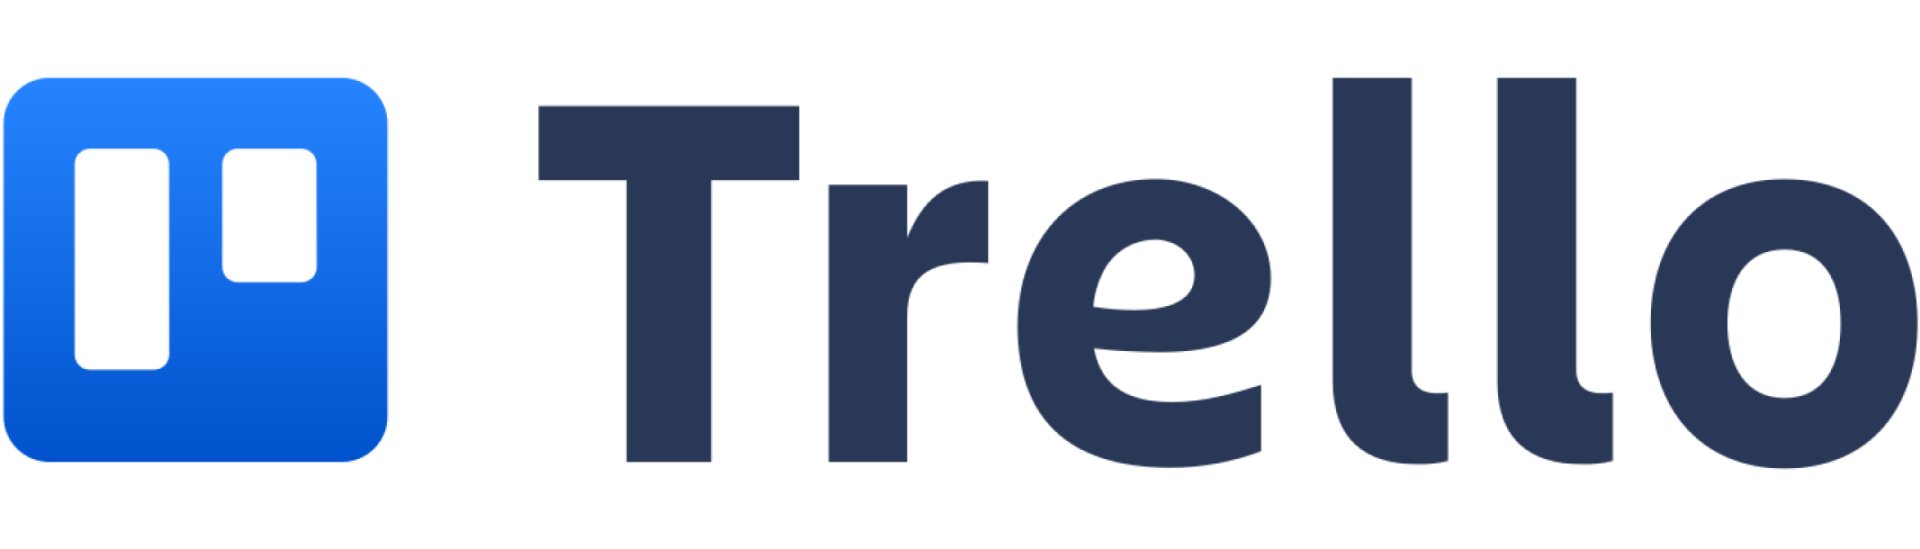 Trello_logo 2